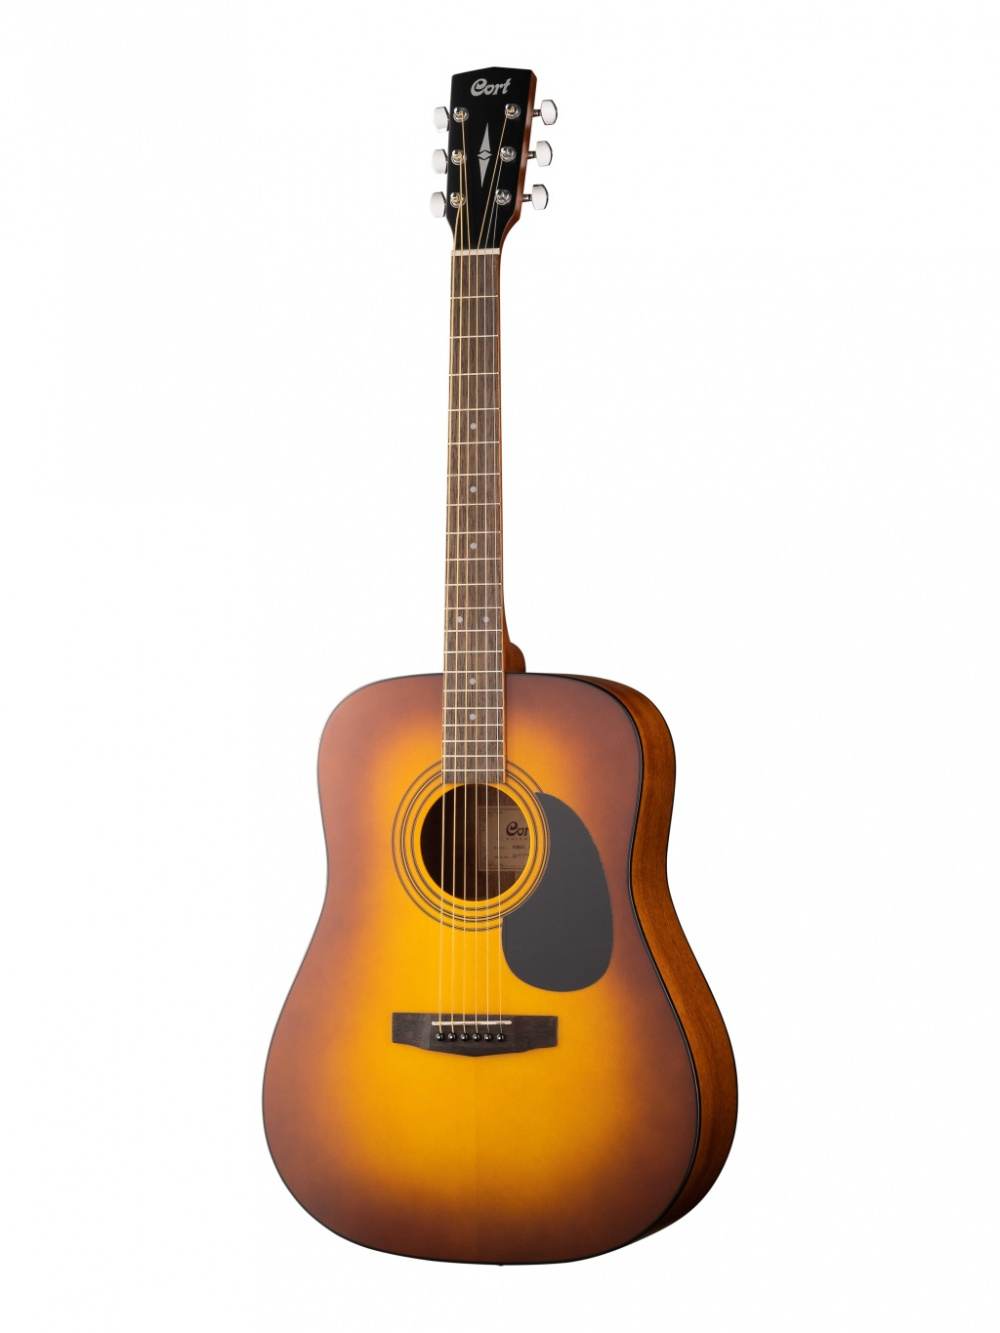 AD810-SSB Standard Series Акустическая гитара, санберст, Cort